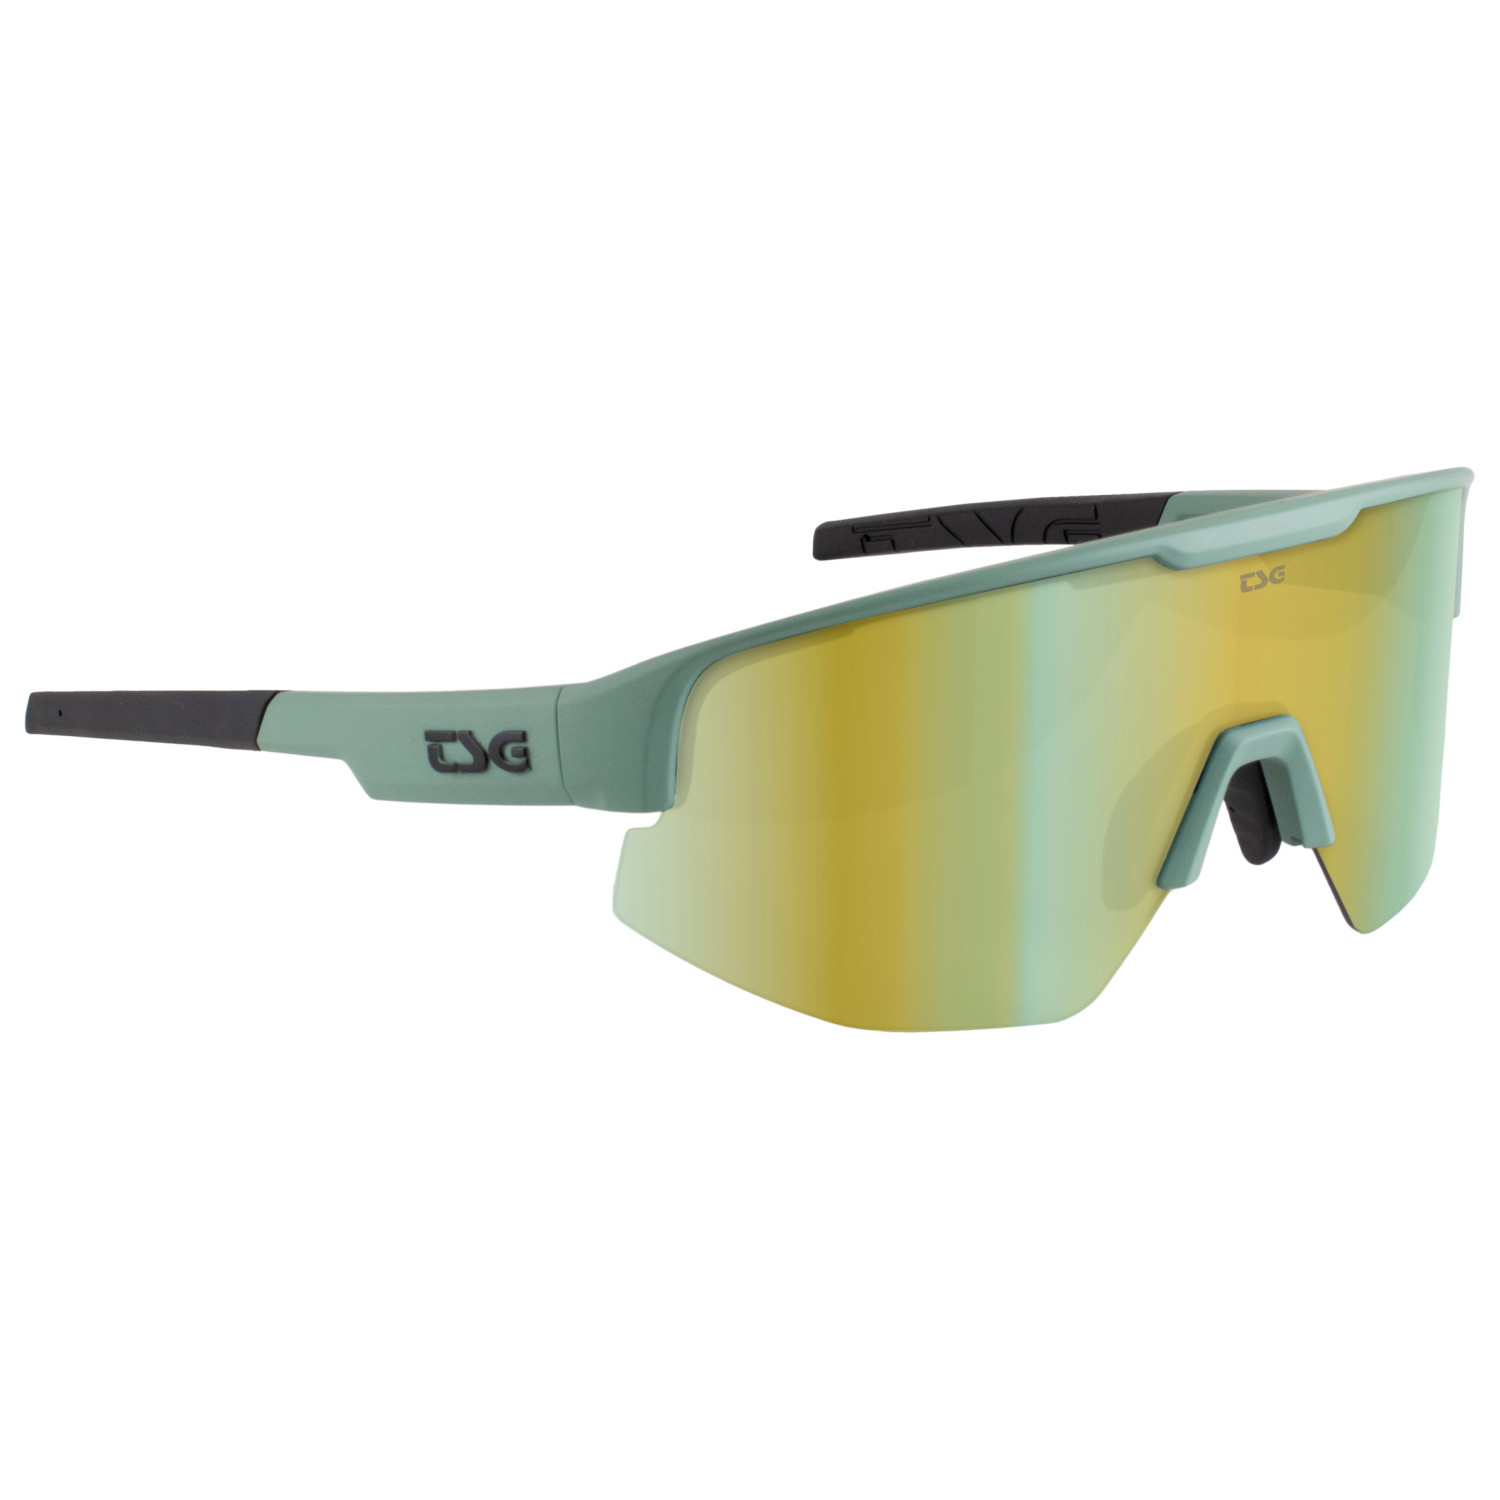 Велосипедные очки Tsg Loam Sunglasses, цвет Green/Grey фотографии